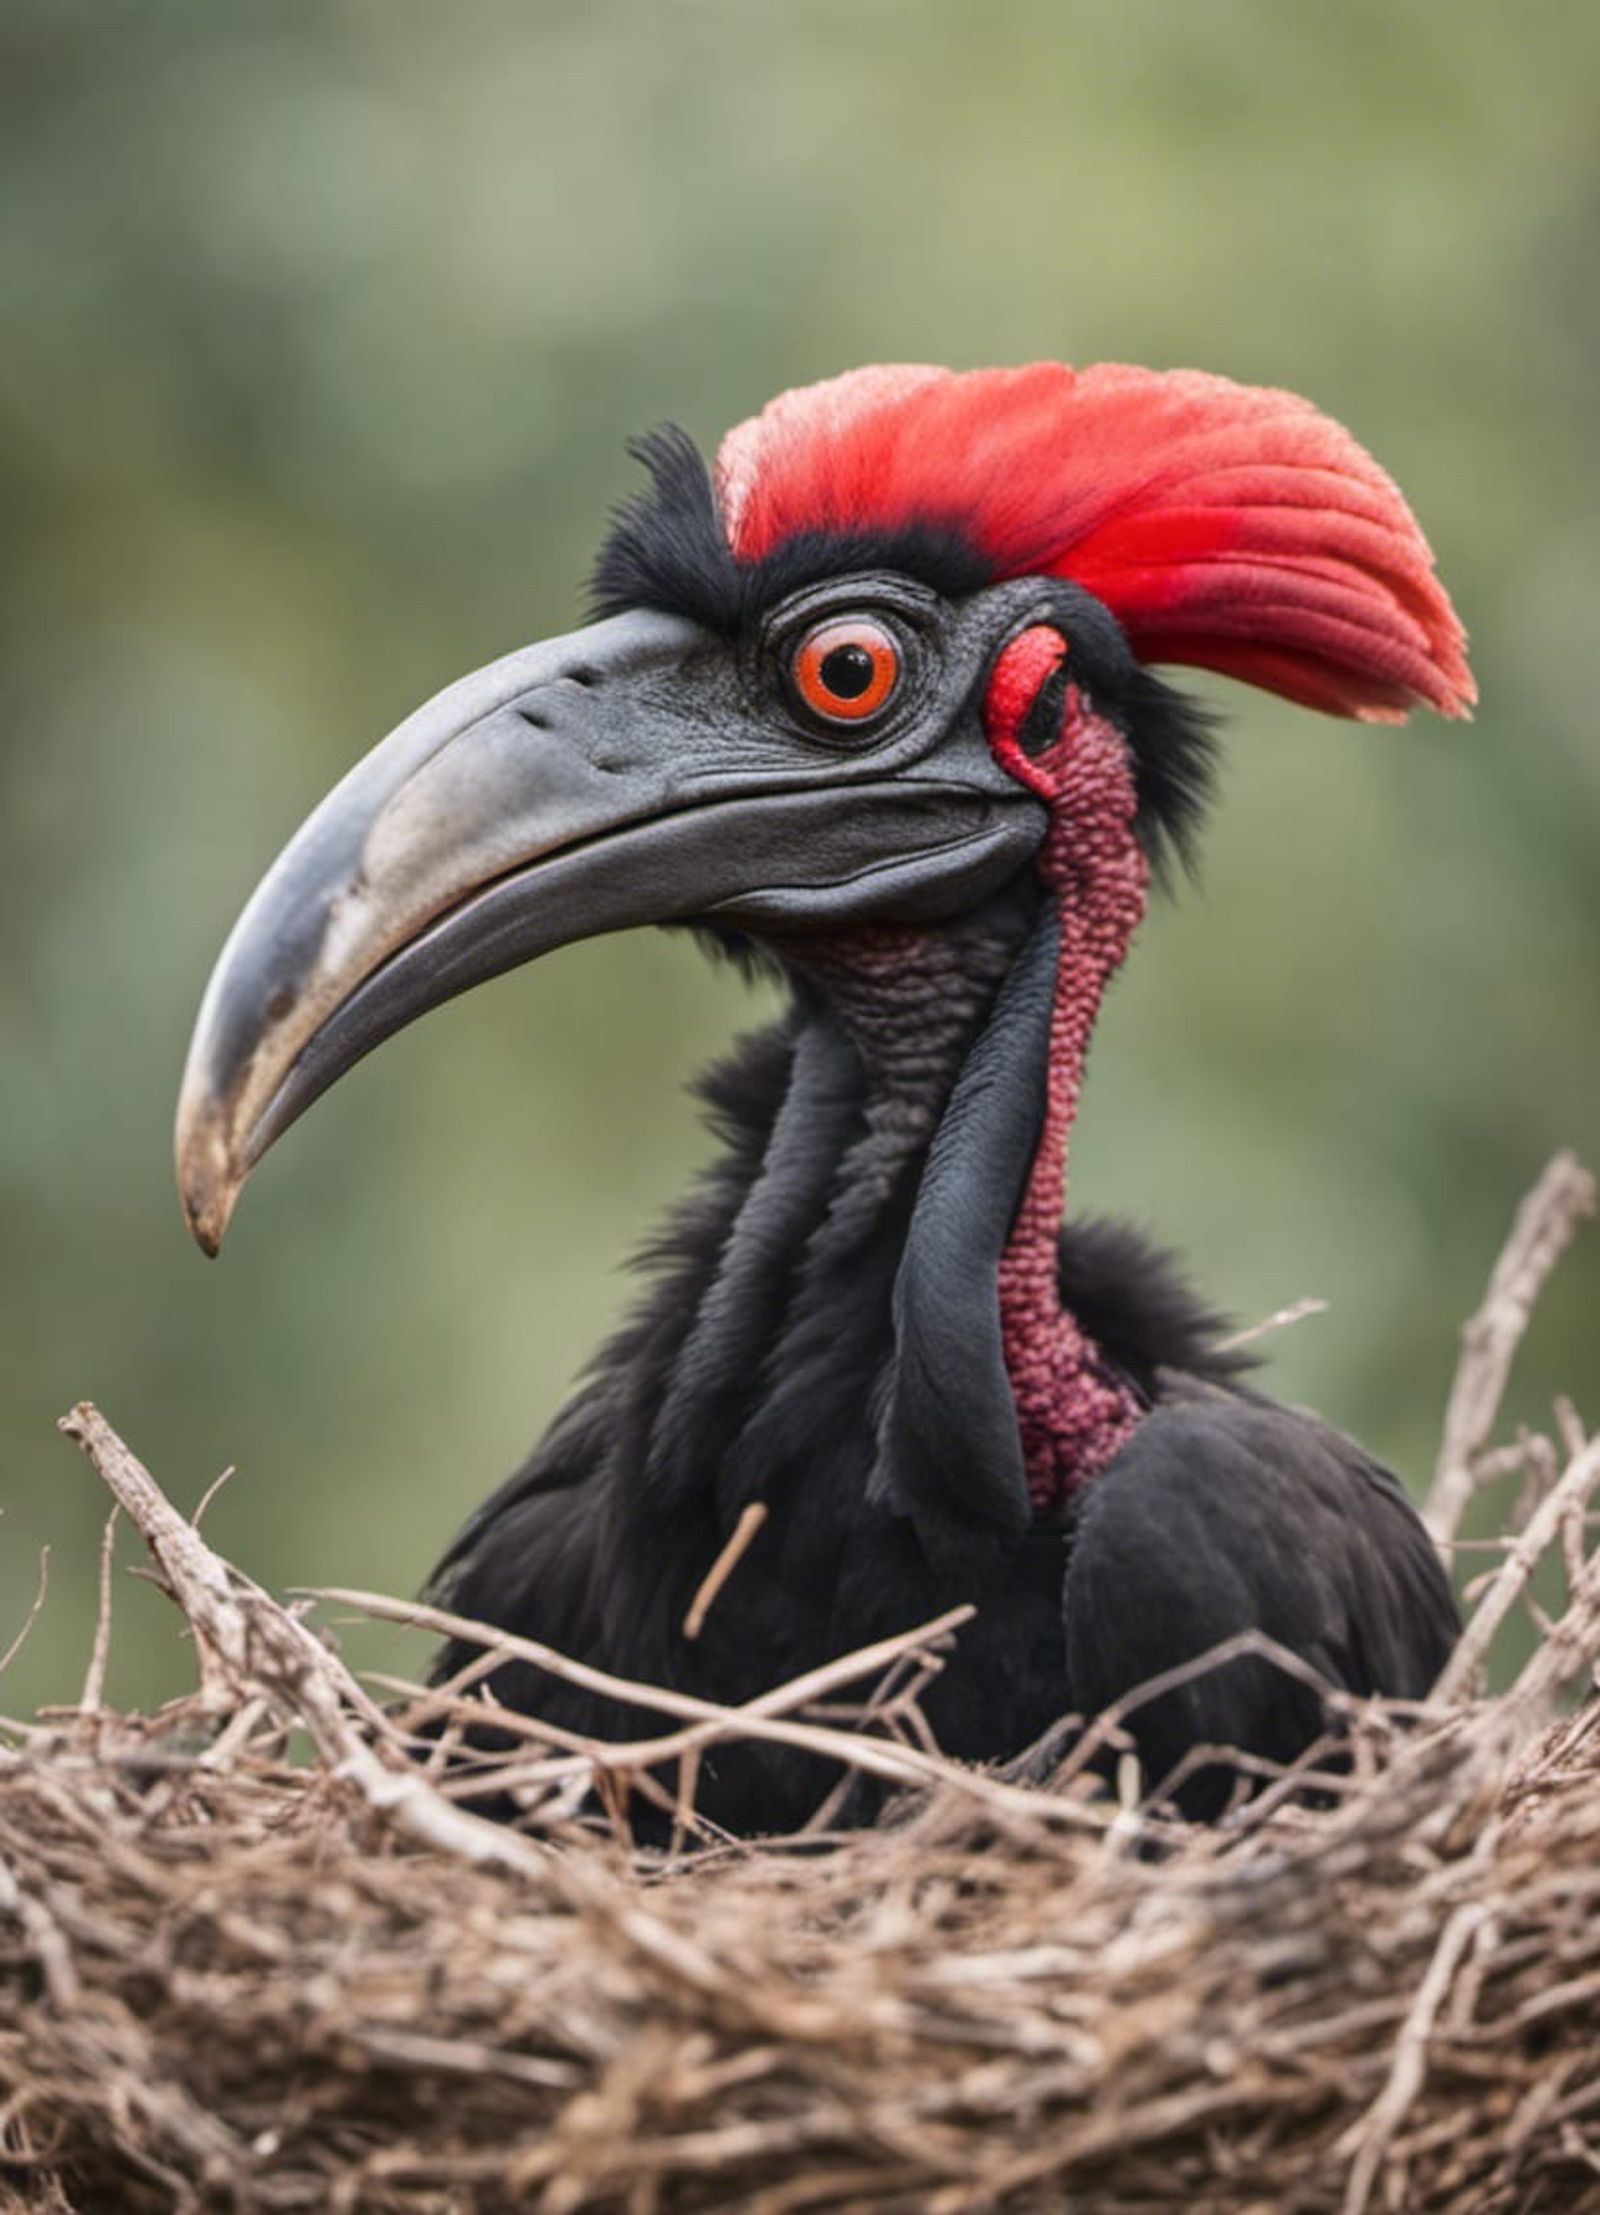 ground hornbill nest